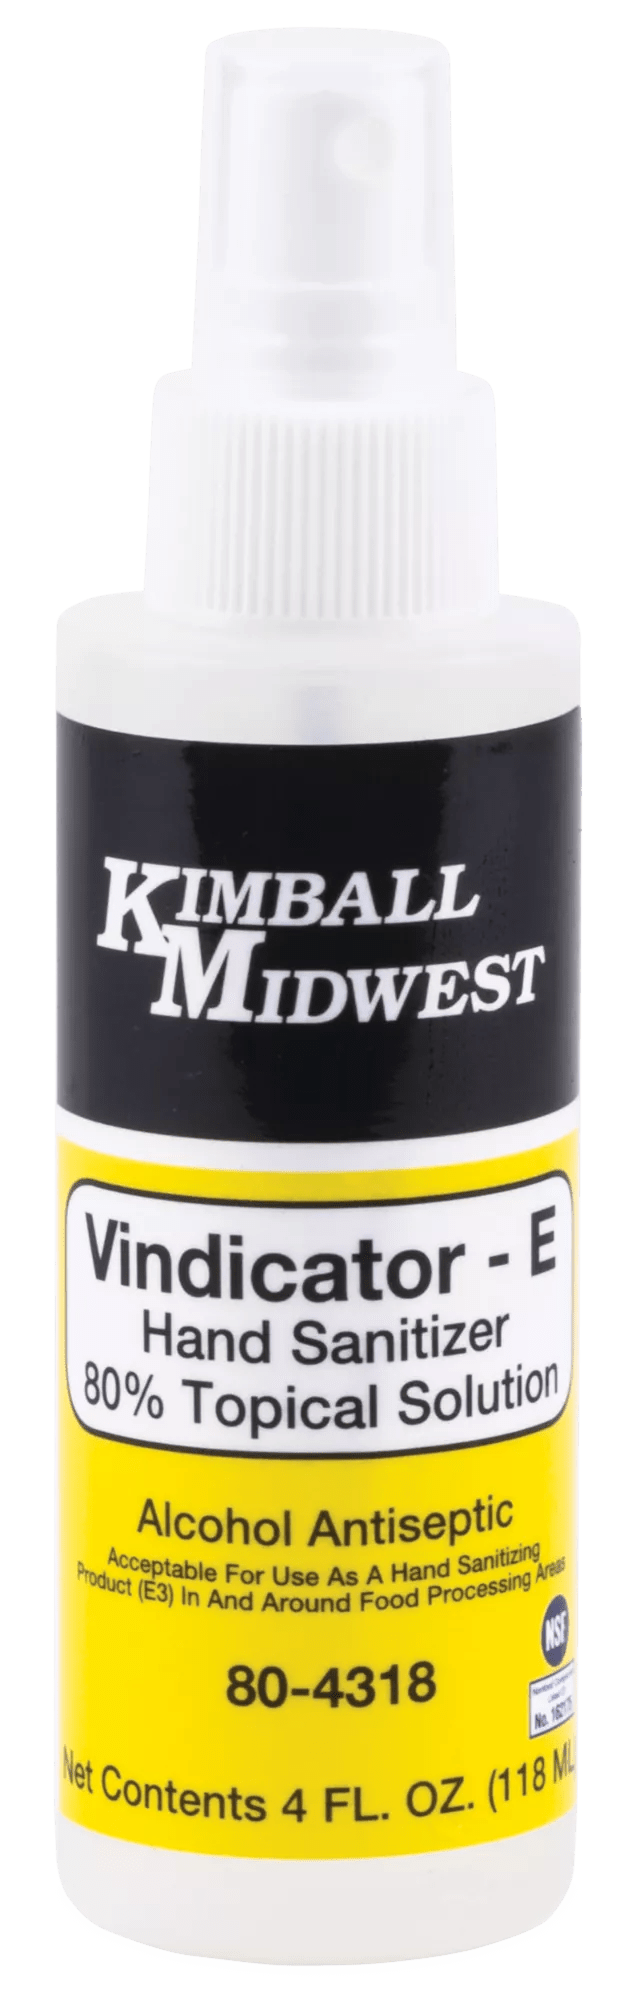 NSF Registered Vindicator-E Hand Sanitizer Spray - 4 oz. Bottle - Bulk